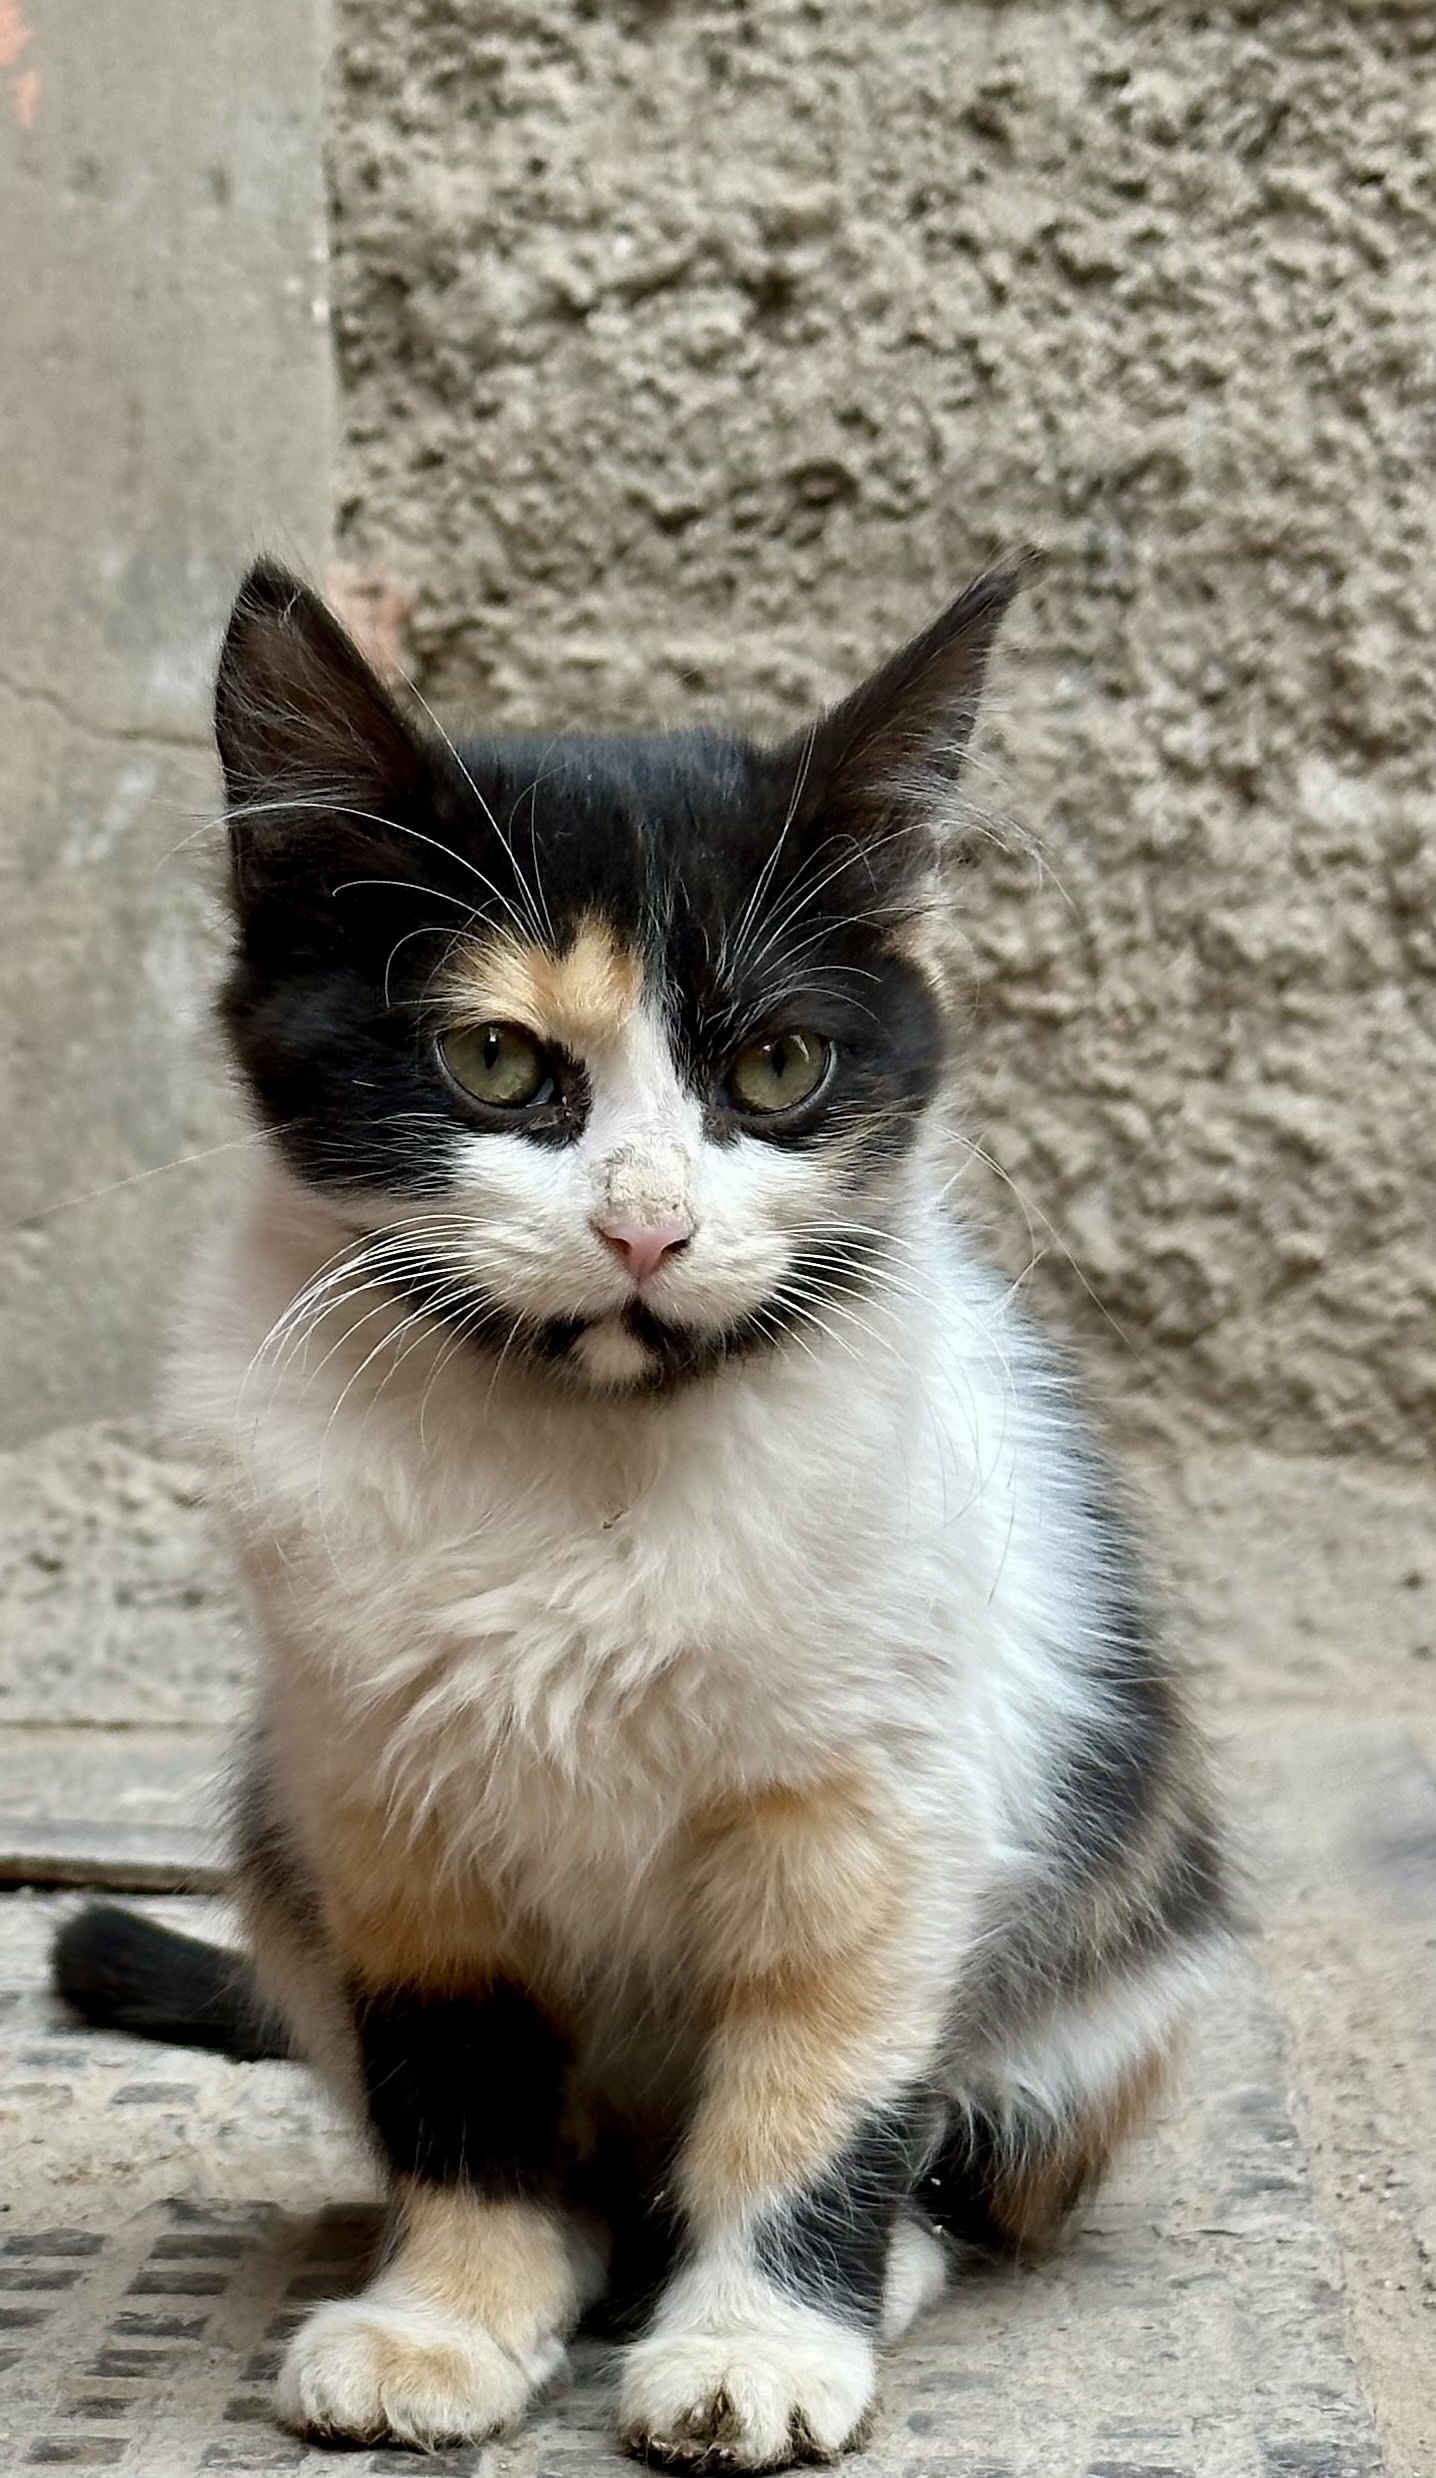 A stray kitten in Marrakesh.